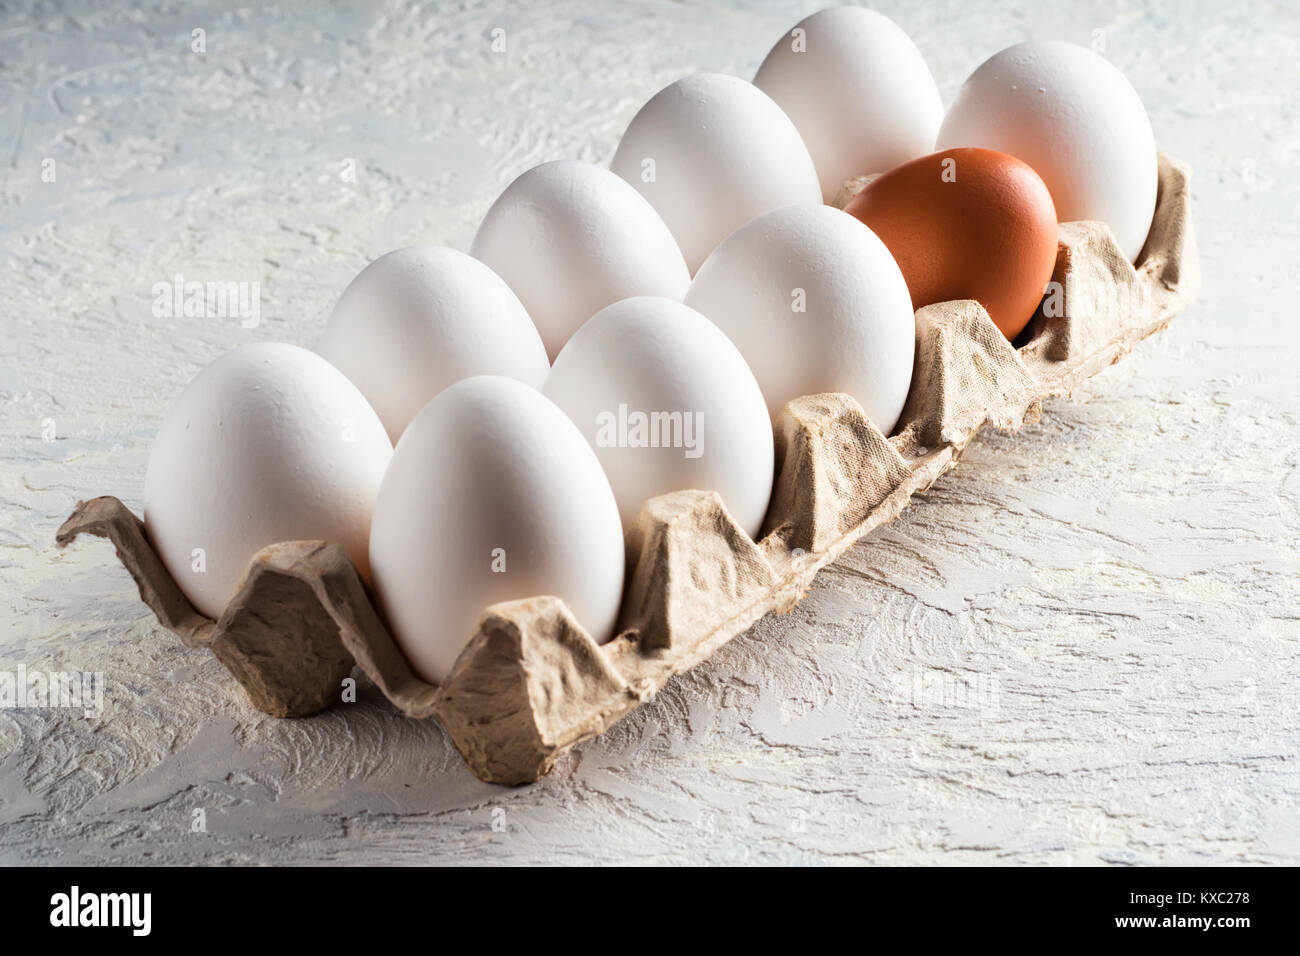 Pack de huevo marrón y uno beige concepto antinatural perjudiciales diferentes racismo Foto de stock